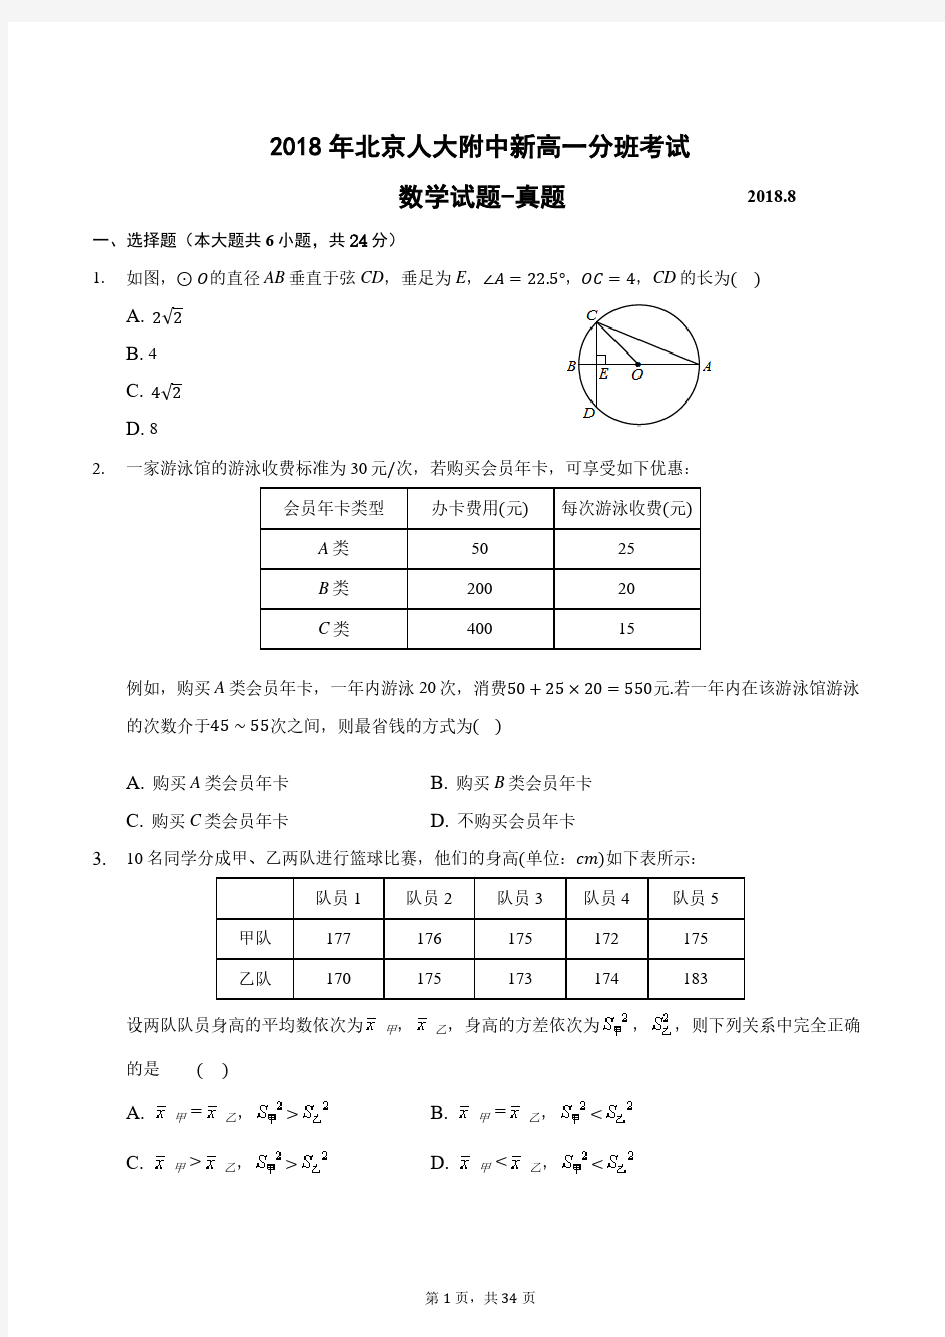 2018年北京人大附中新高一分班考试数学试题-真题-含详细解析